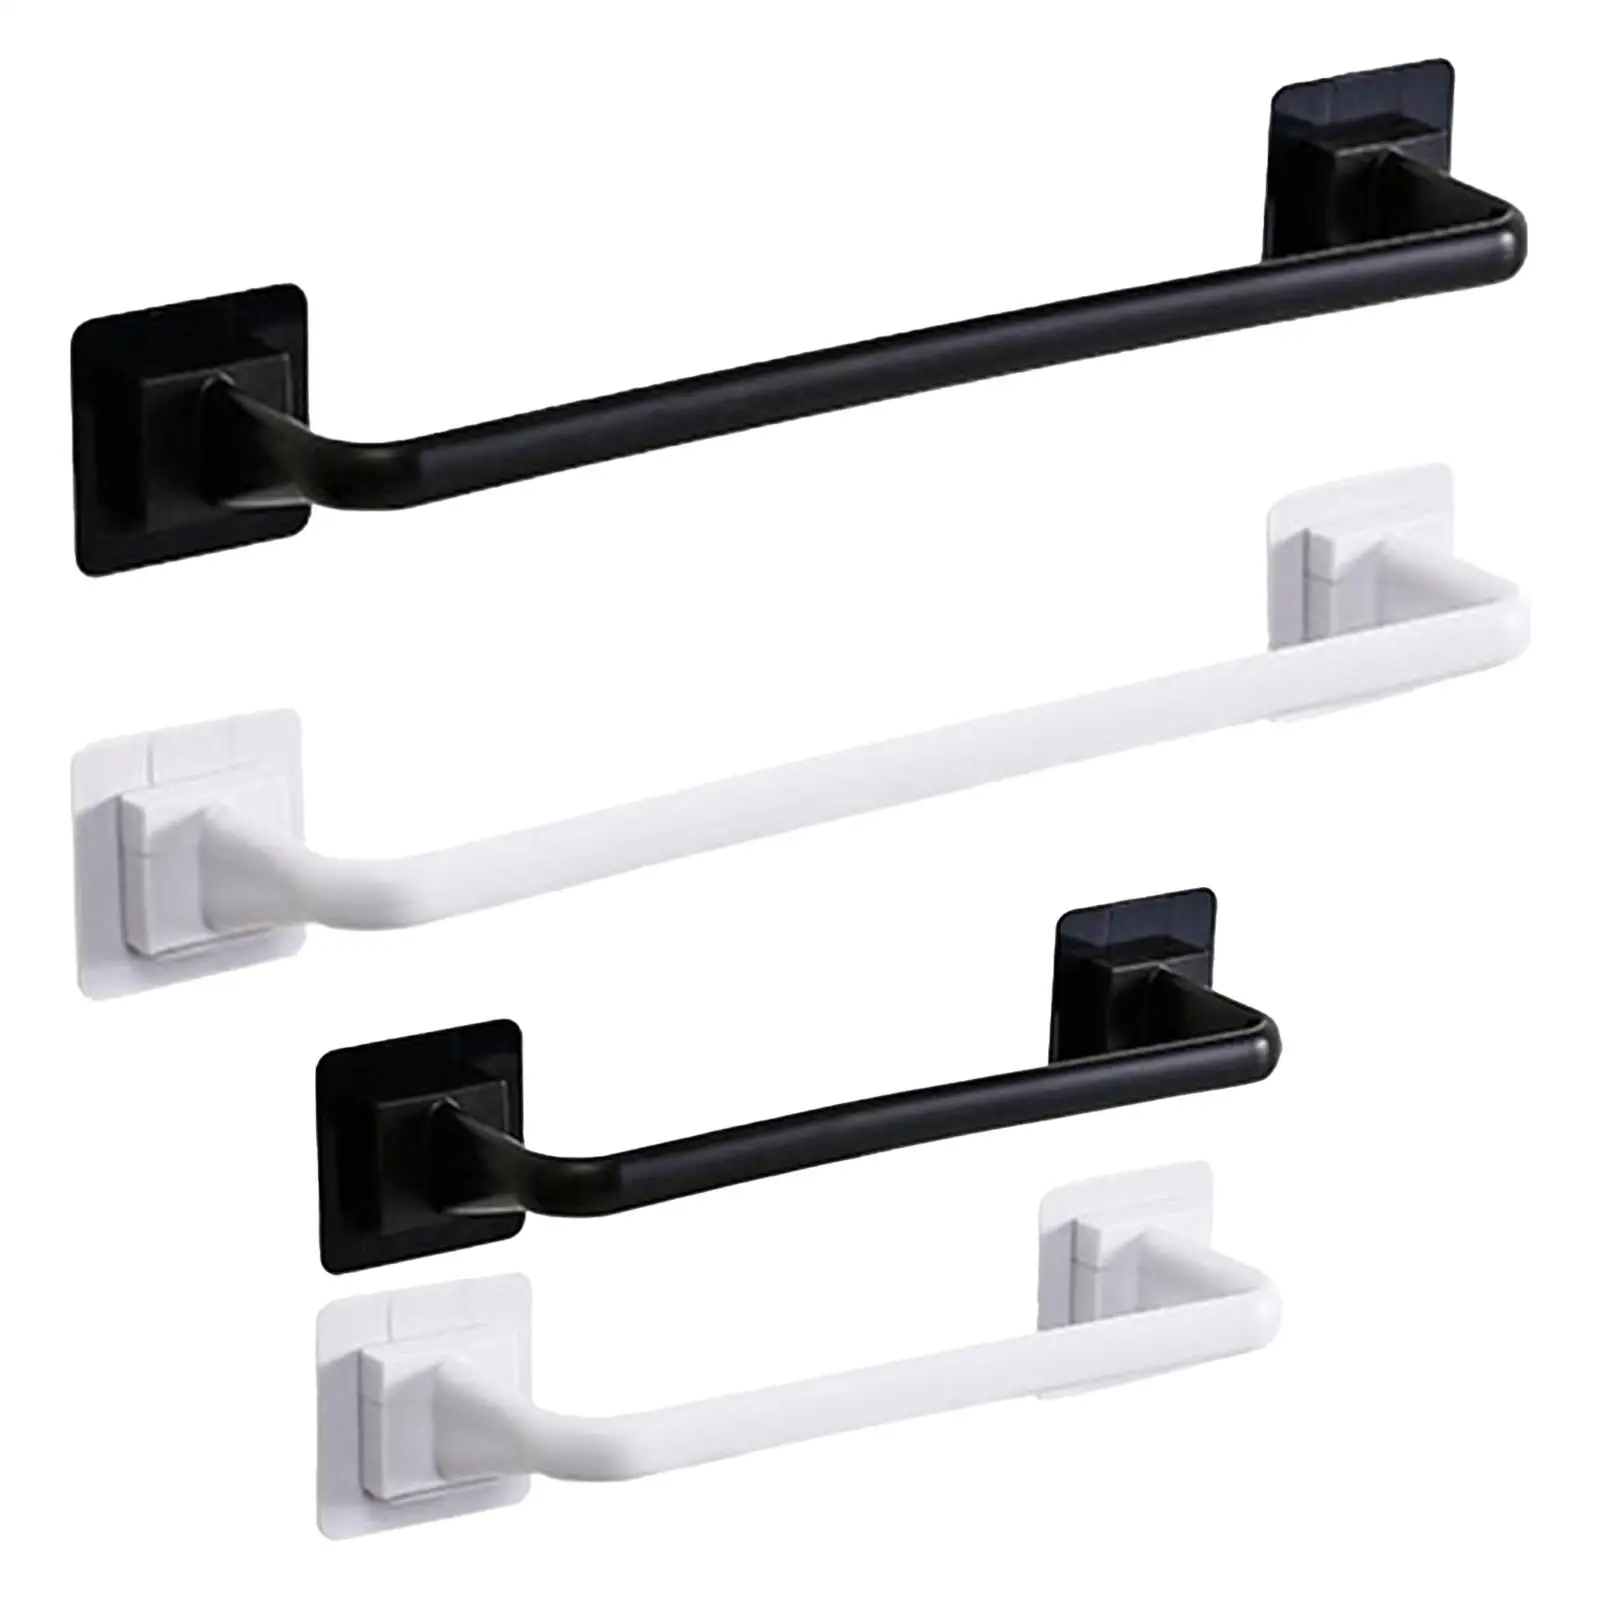 Stable Over Towel Bar or Door Removable Waterproof Decorative Hook Towel Bar